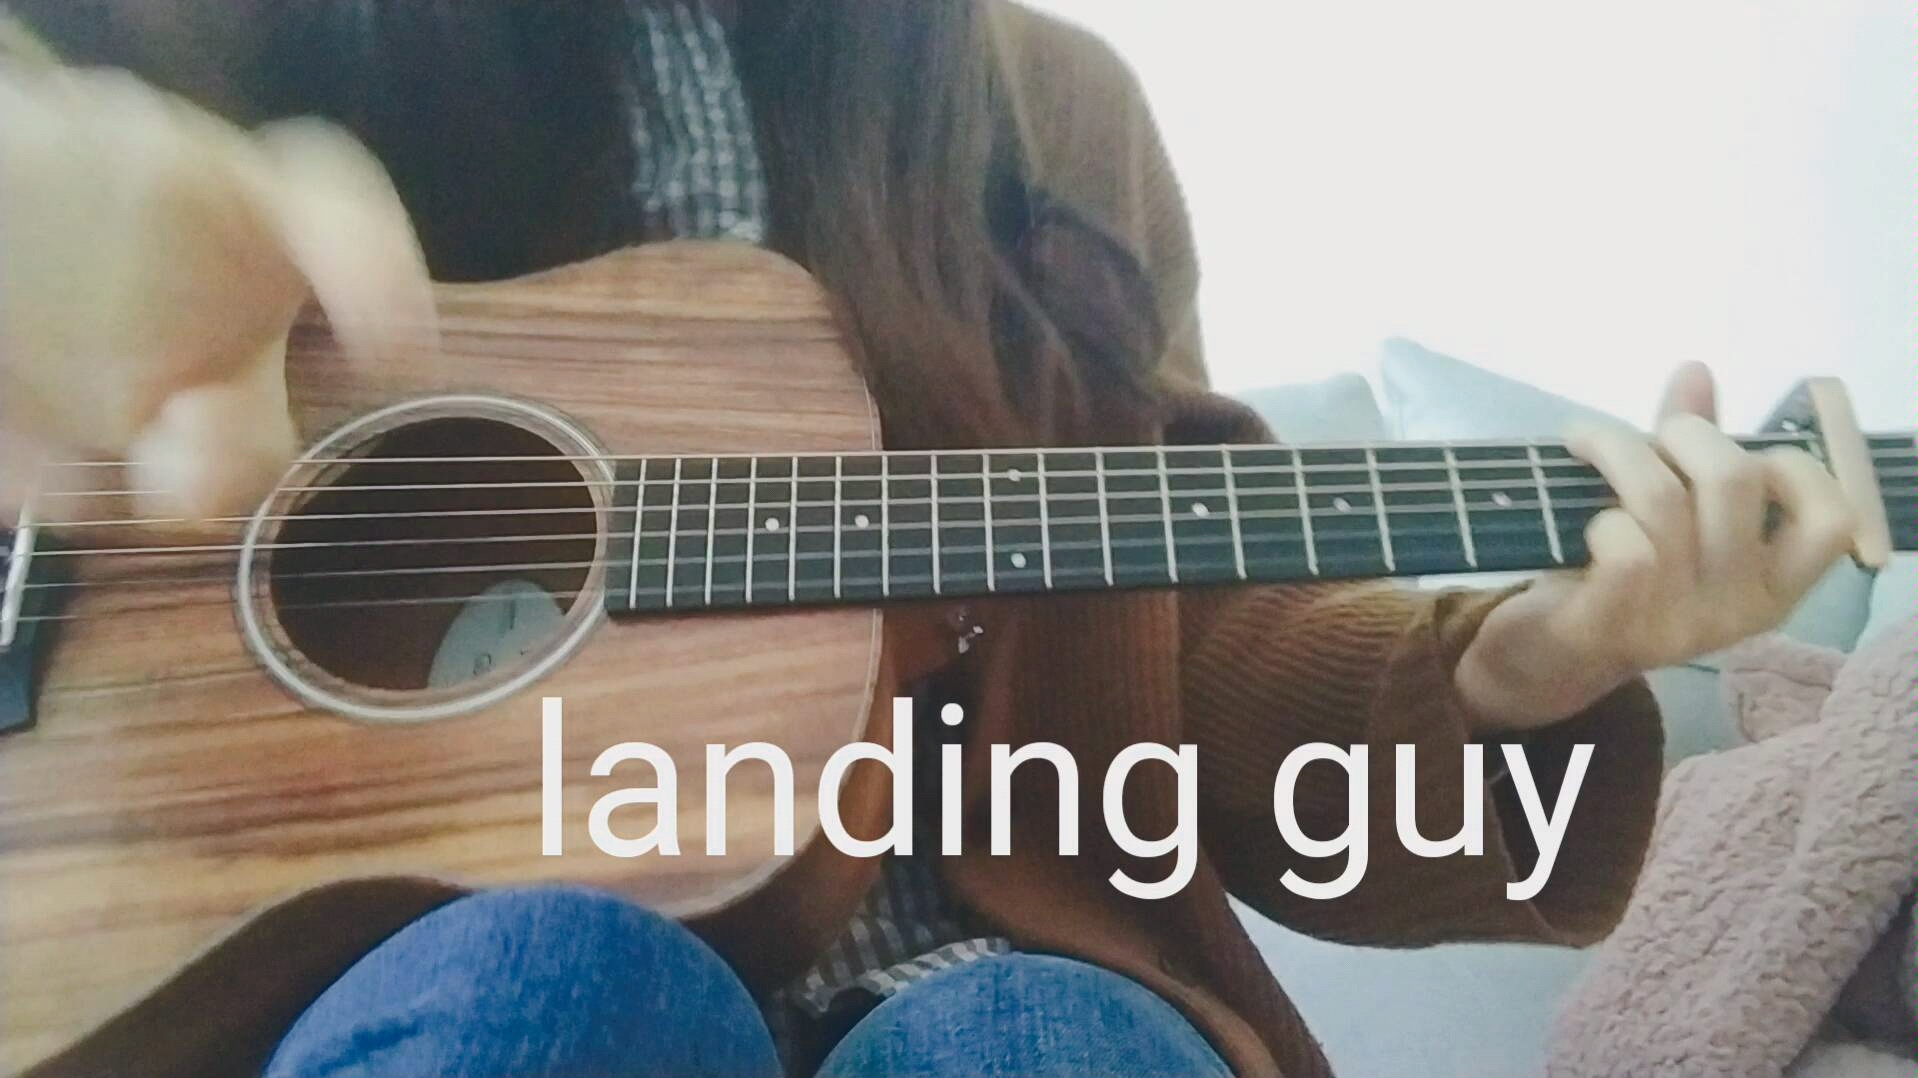 【吉他谱】《Landing Guy》（迷藏）- 刘昊霖/kidult – 飞啦不休